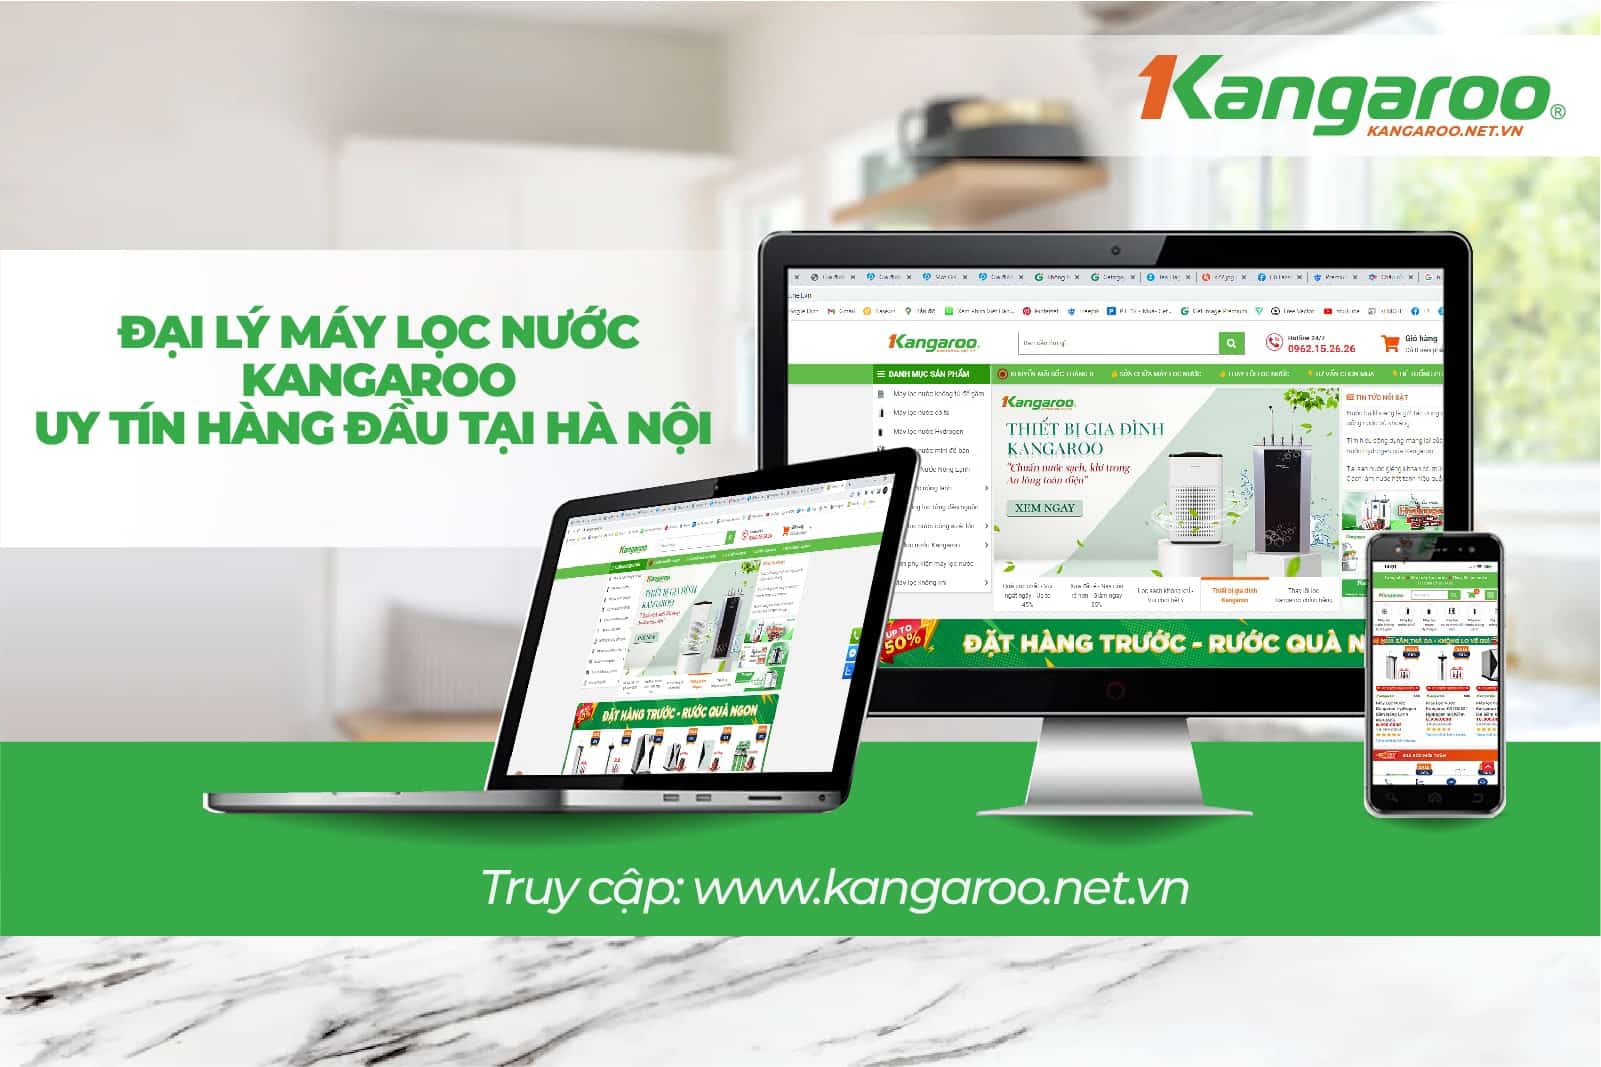 Kangaroo.net.vn là địa chỉ uy tín luôn được khách hàng tin dùng